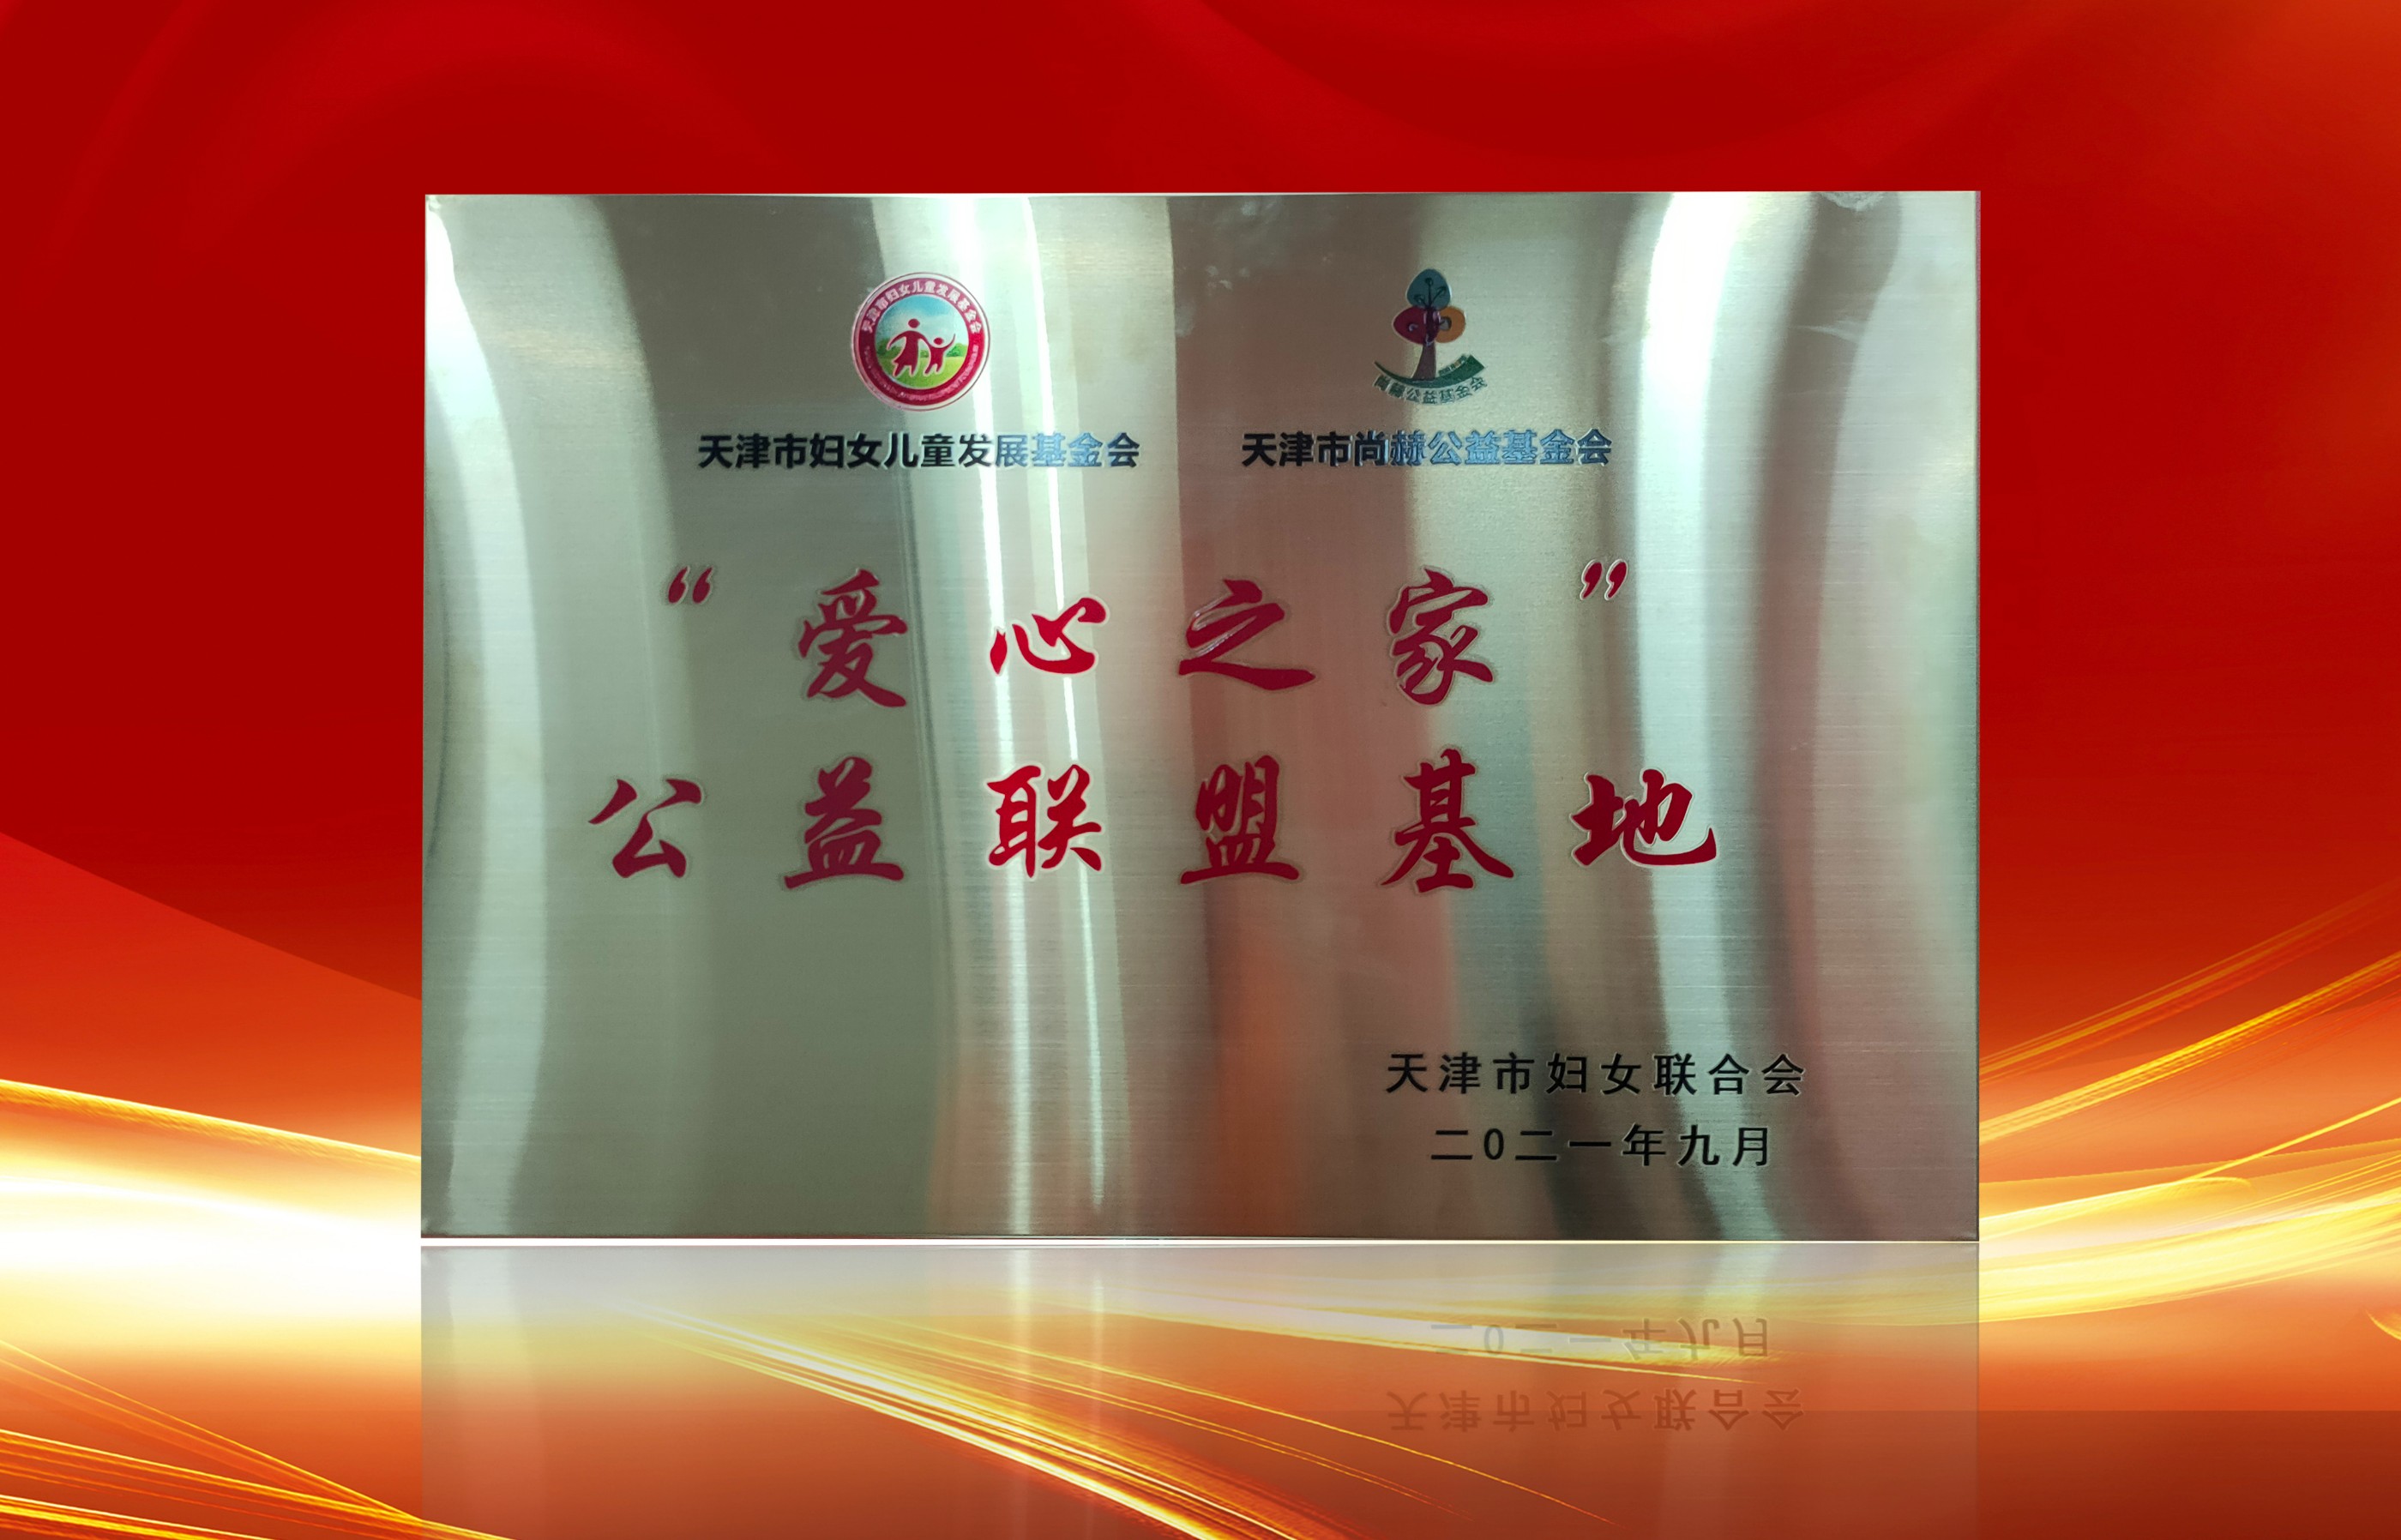 2021年9月-尊龙体育国际(中国)科技有限公司荣获-天津市妇女联合会-“爱心之家”公益联盟基地奖牌